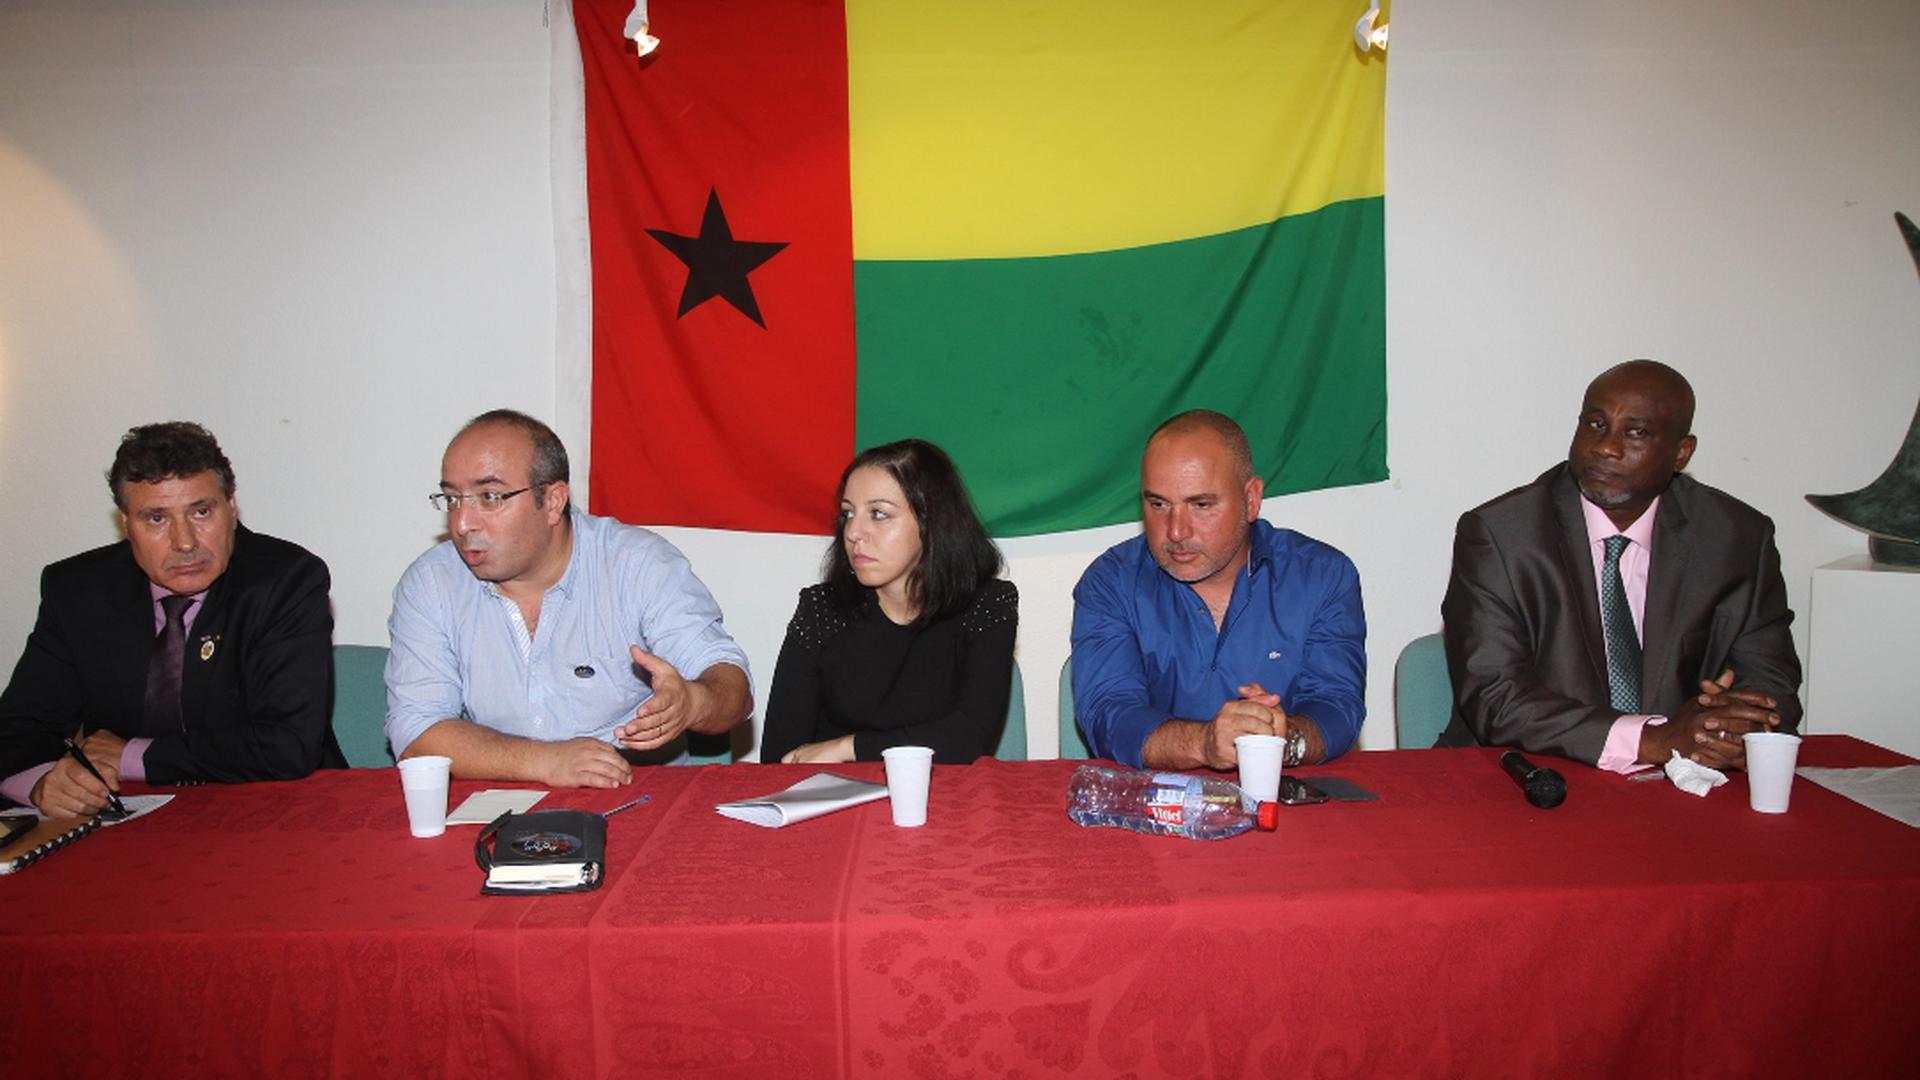 A situação da comunidade guineense no Luxemburgo foi discutida no sábado. O debate, moderado por Victor Hugo, que também organizou a exposição, reuniu representantes do CASA, ASTI e CLAE e o diplomata guineense Carlos Vieira